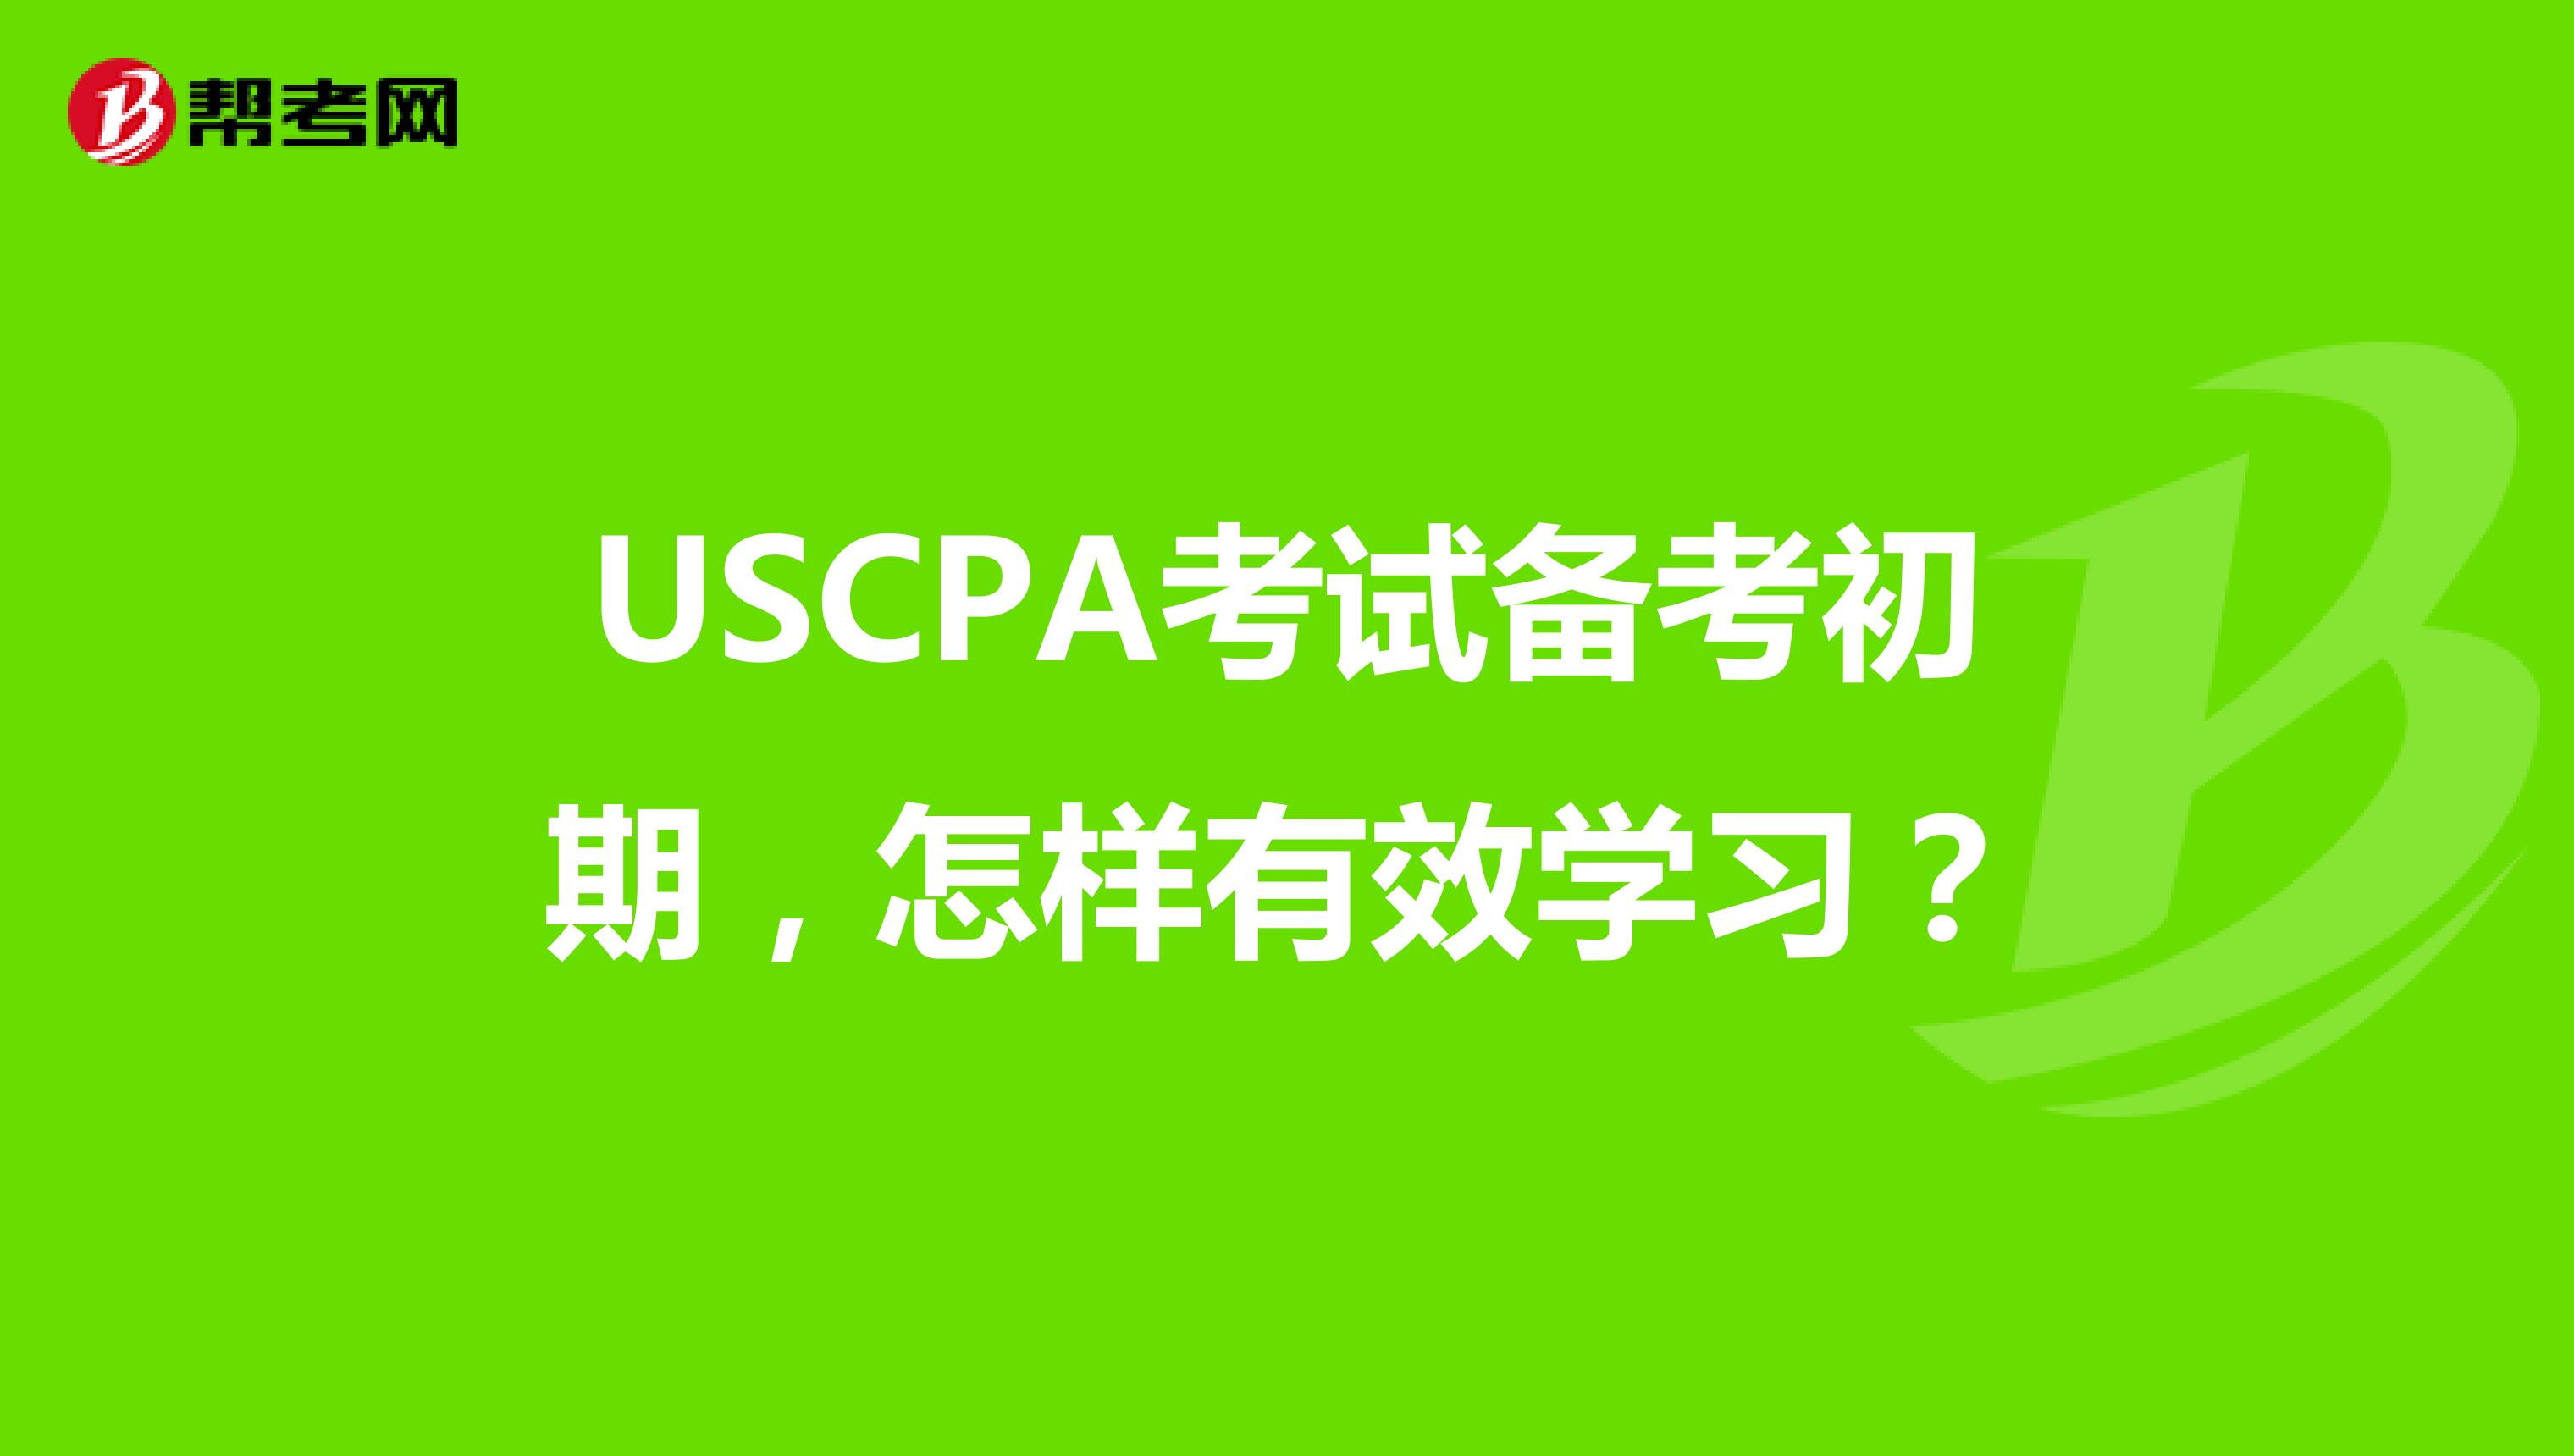 USCPA考试备考初期，怎样有效学习？